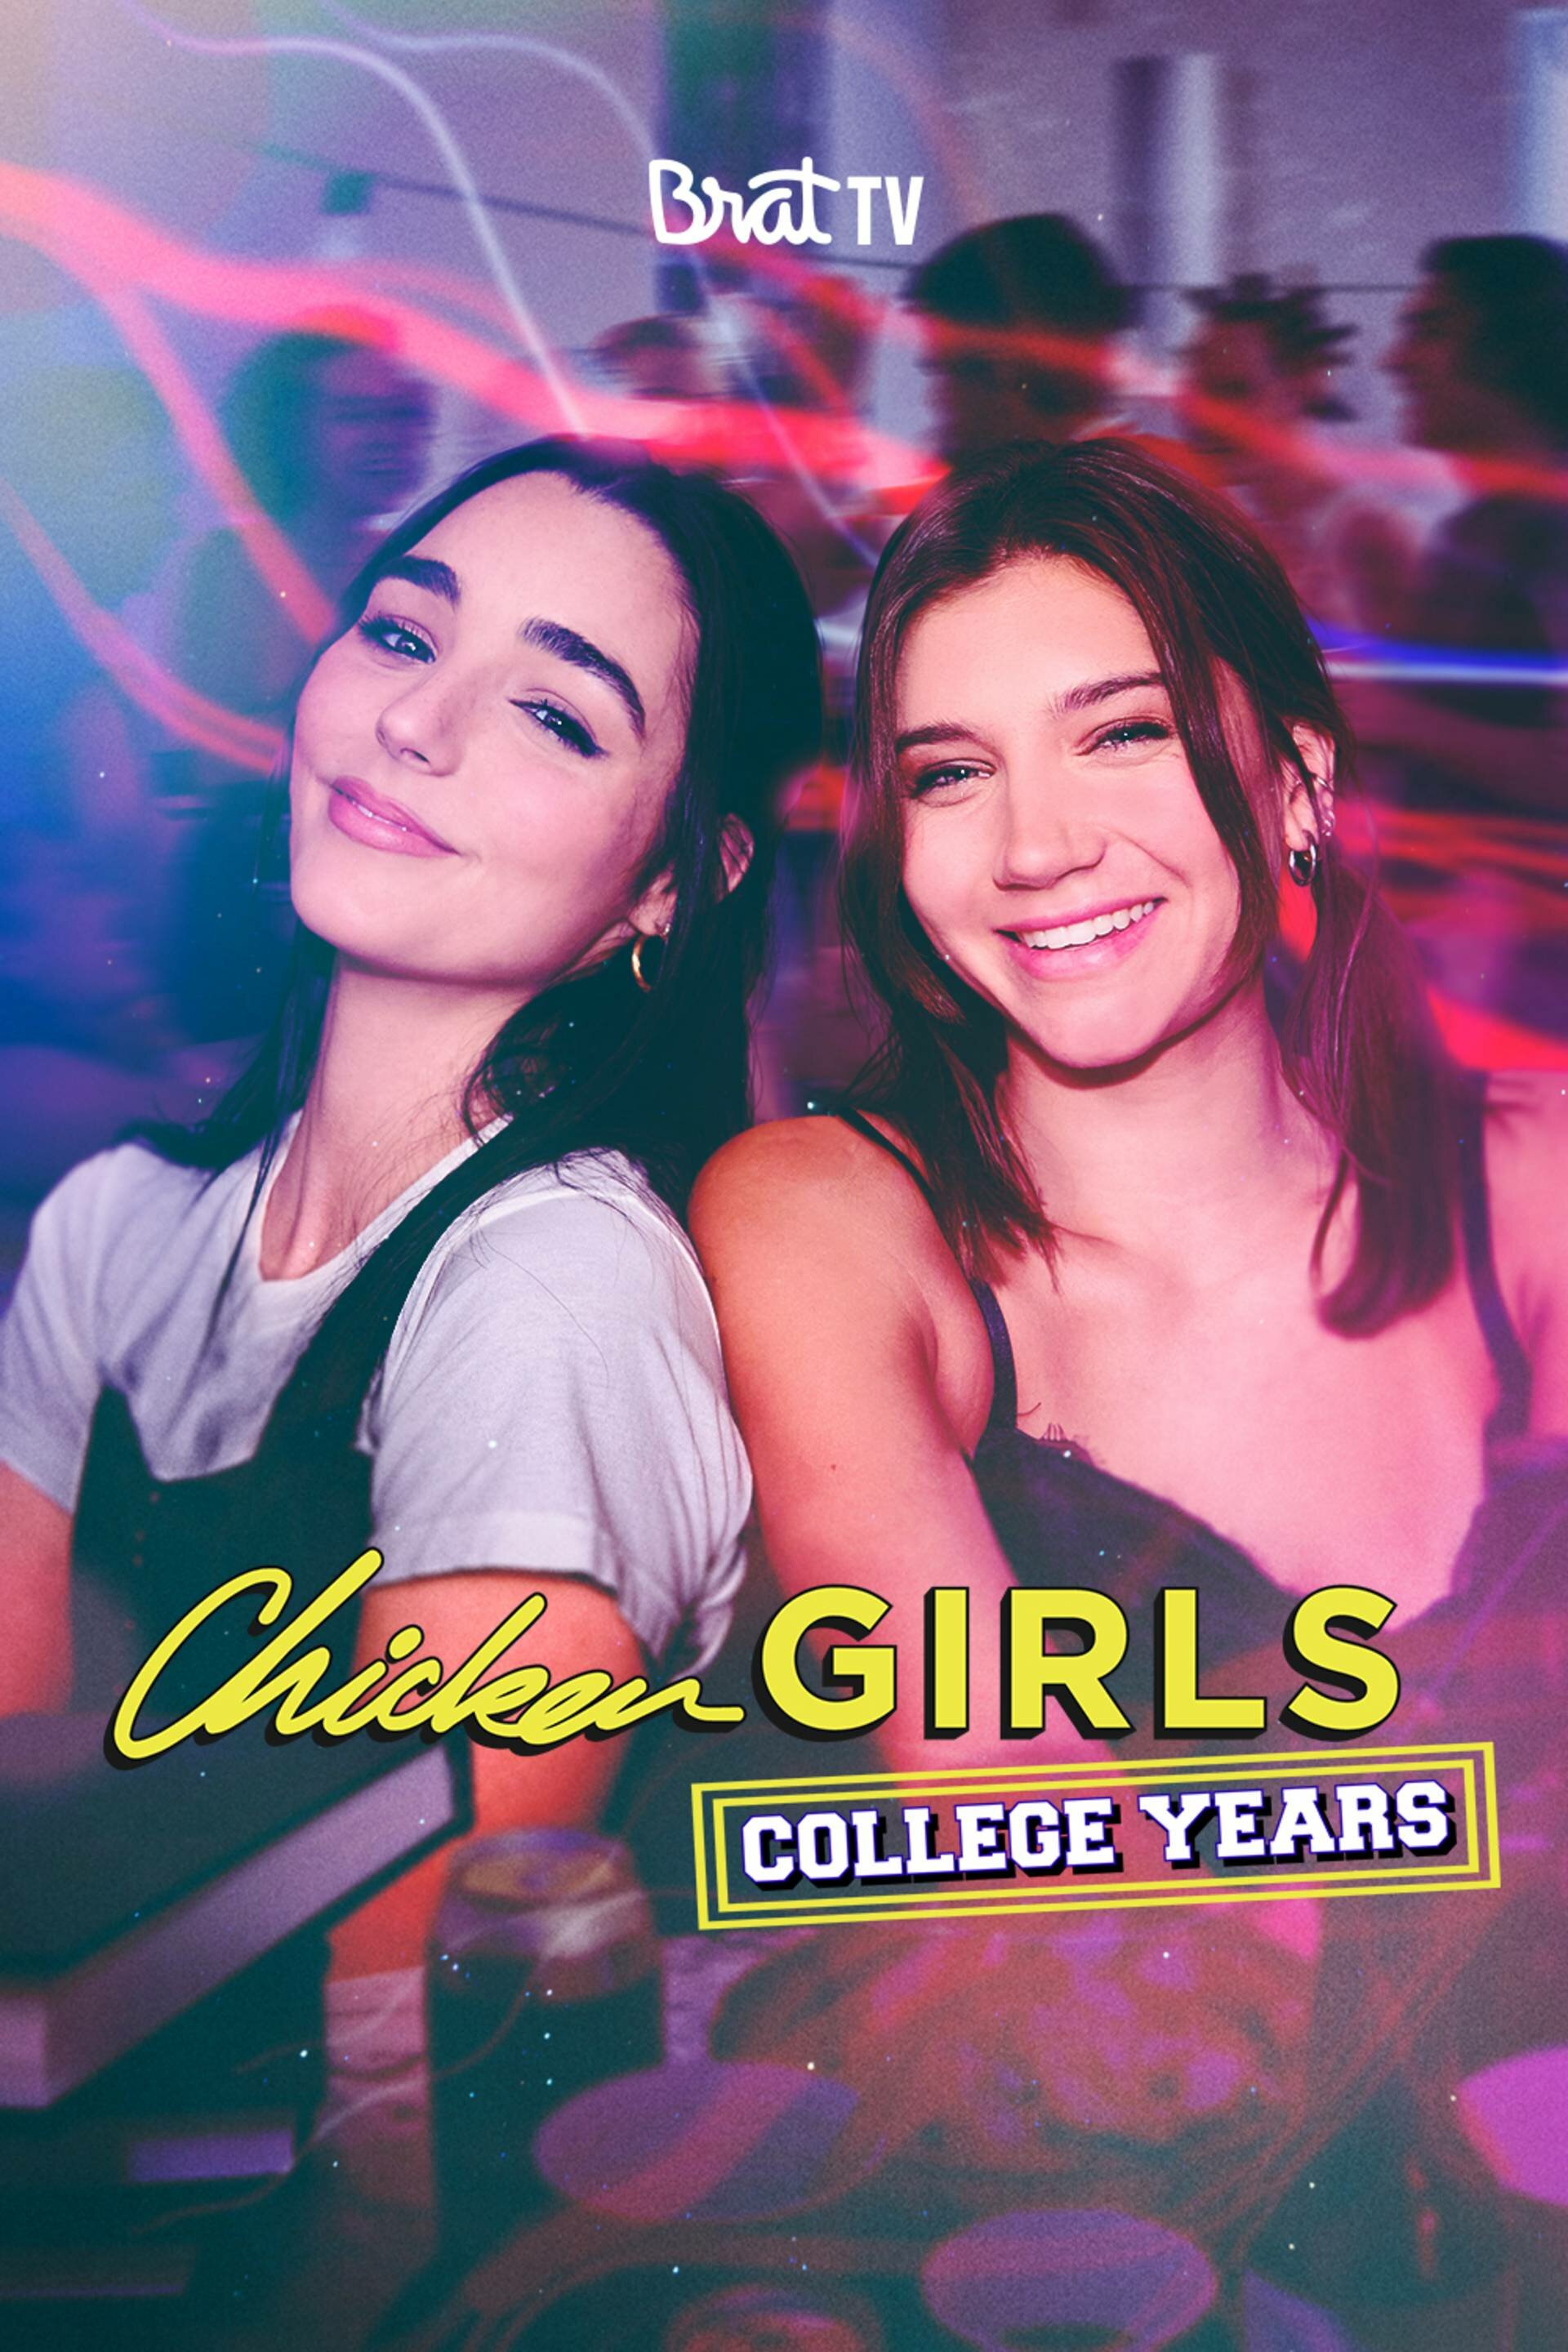 Chicken Girls: College Years ne zaman